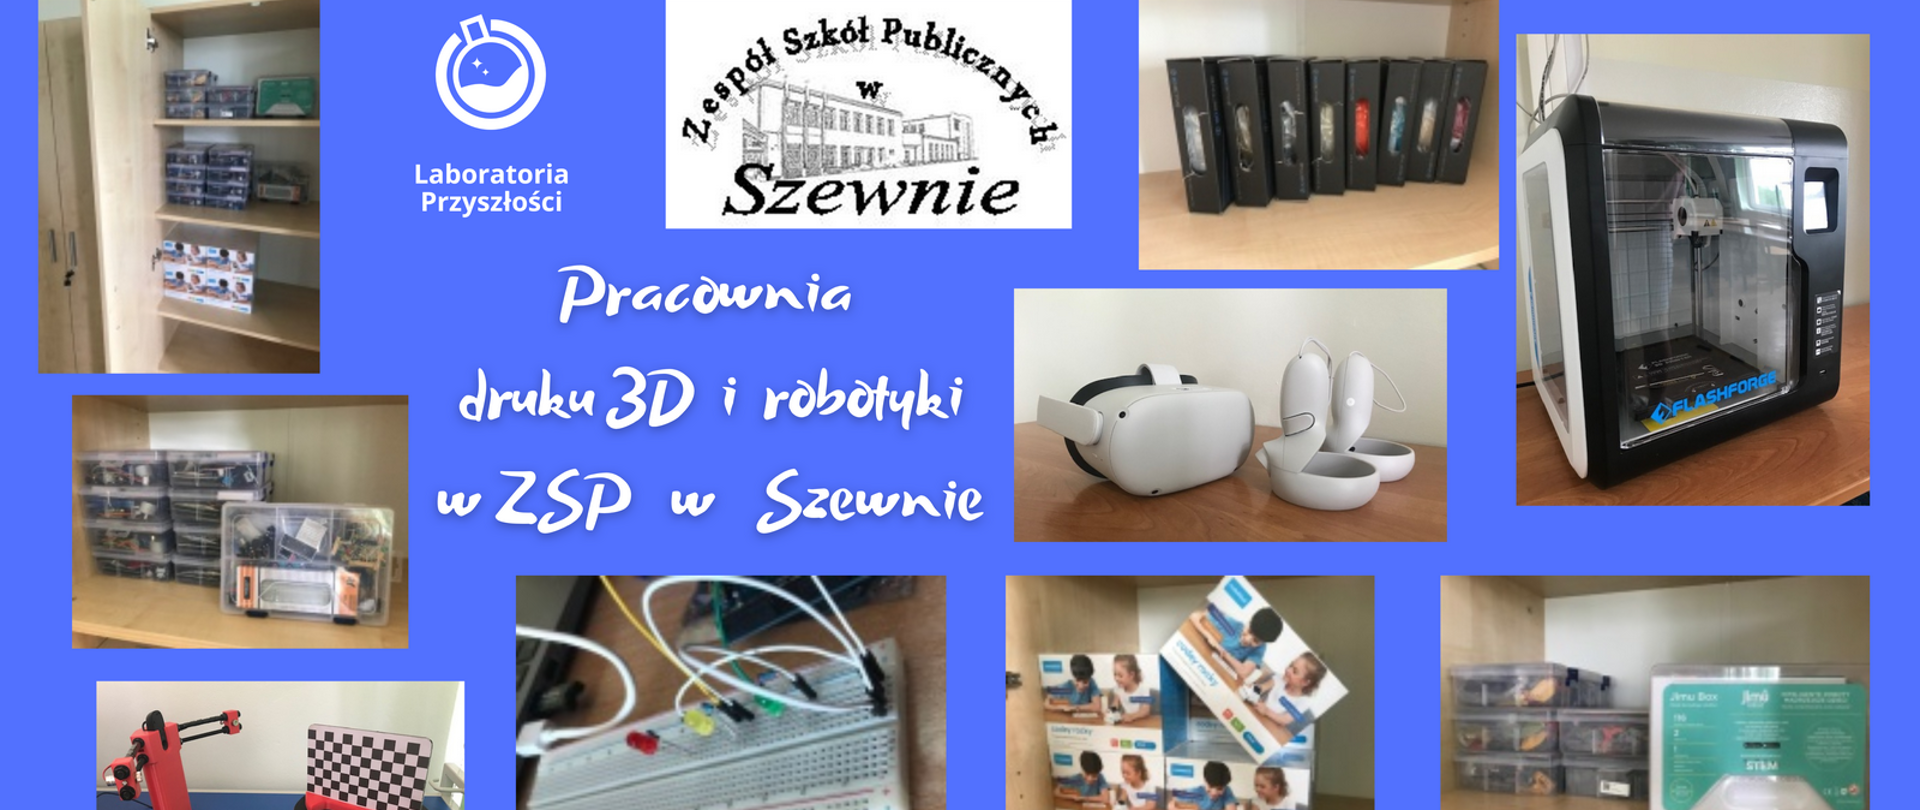 LP_3D_i_robotyka_promocja